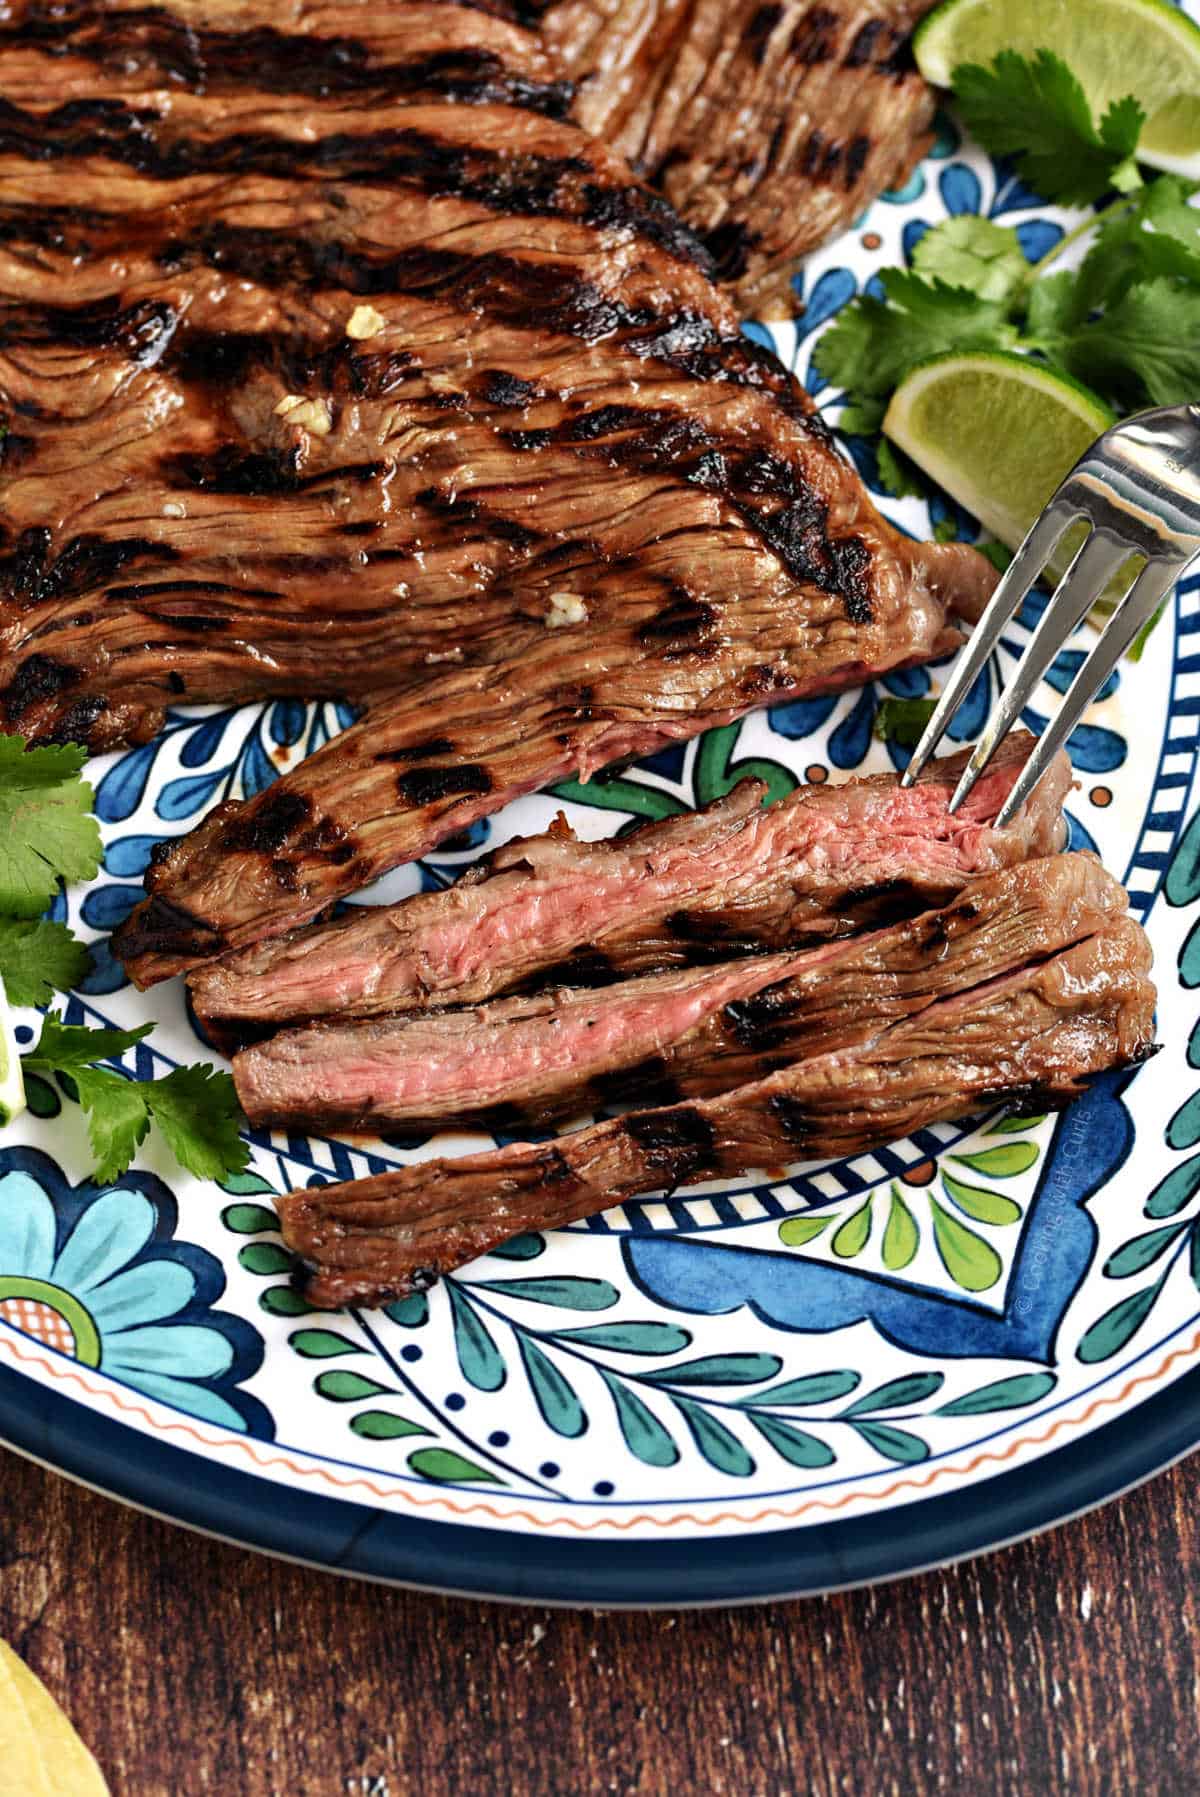 Sliced carne asada steak on a colorful platter.